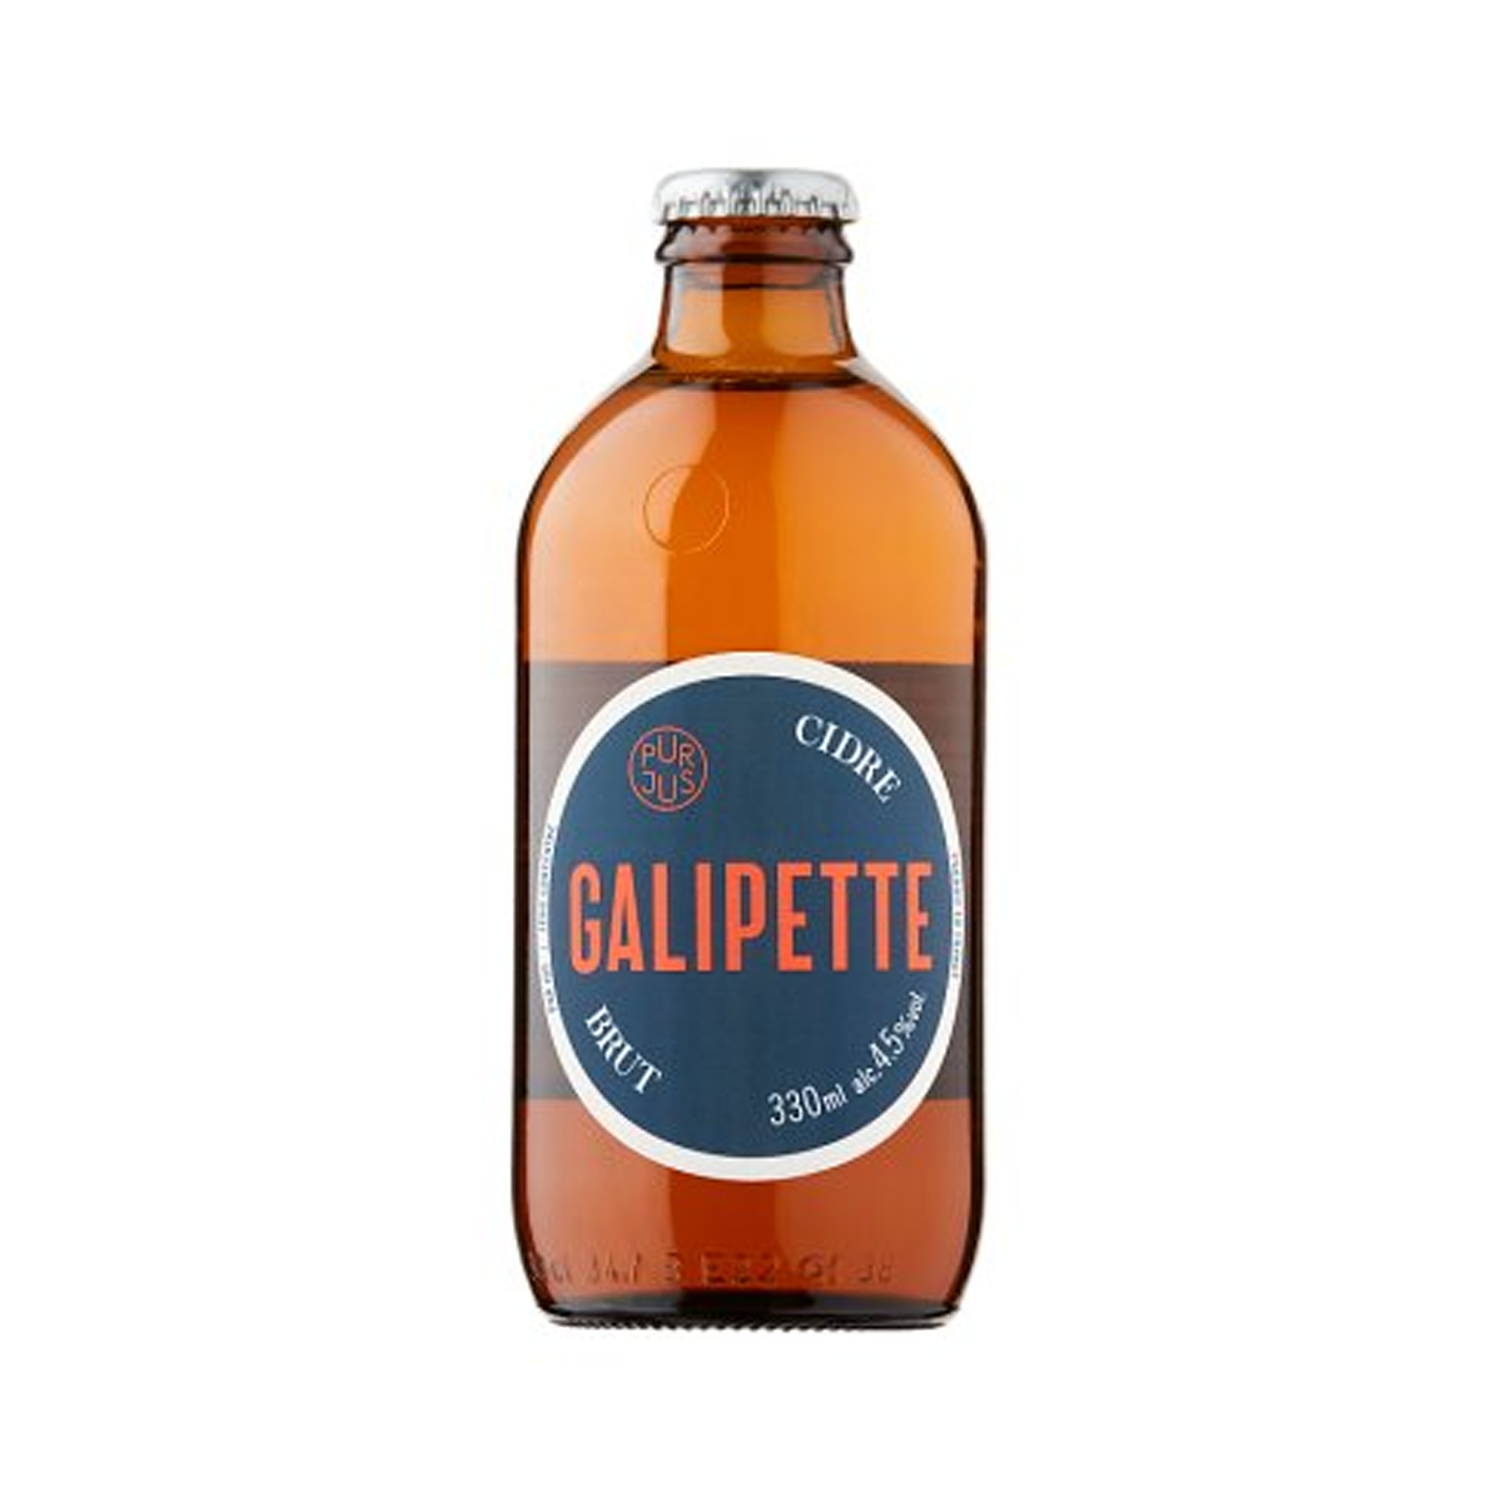 Galipette Cidre Brut